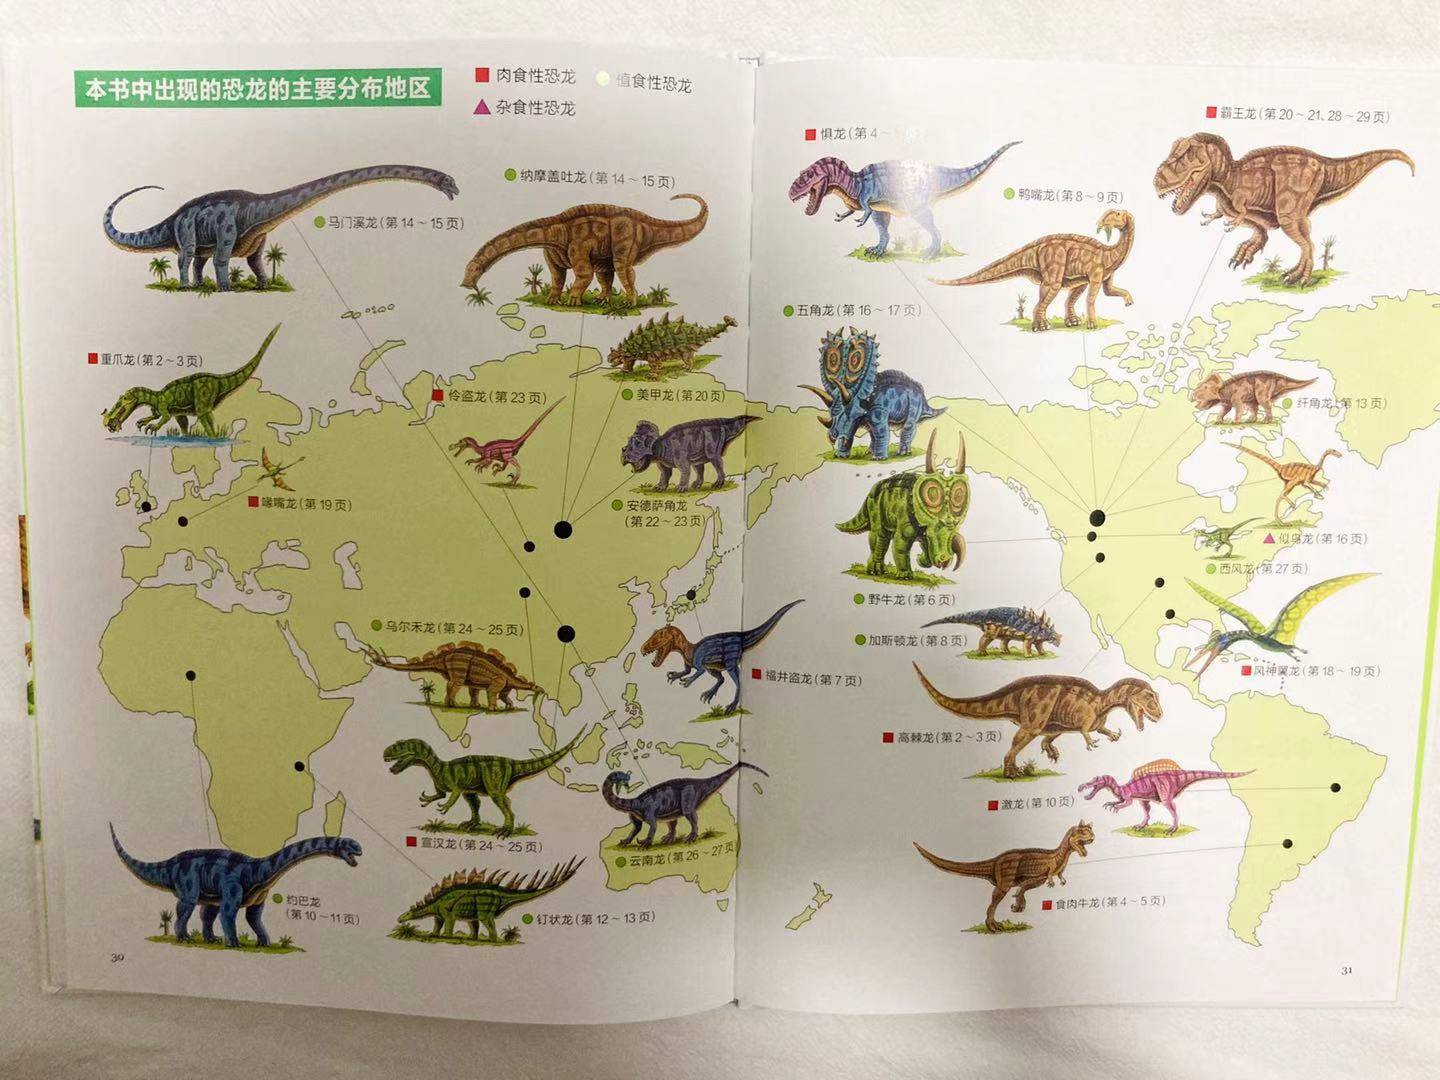 原创豆瓣9分以上的恐龙童书,给每个恐龙迷娃,带去有趣的恐龙科普